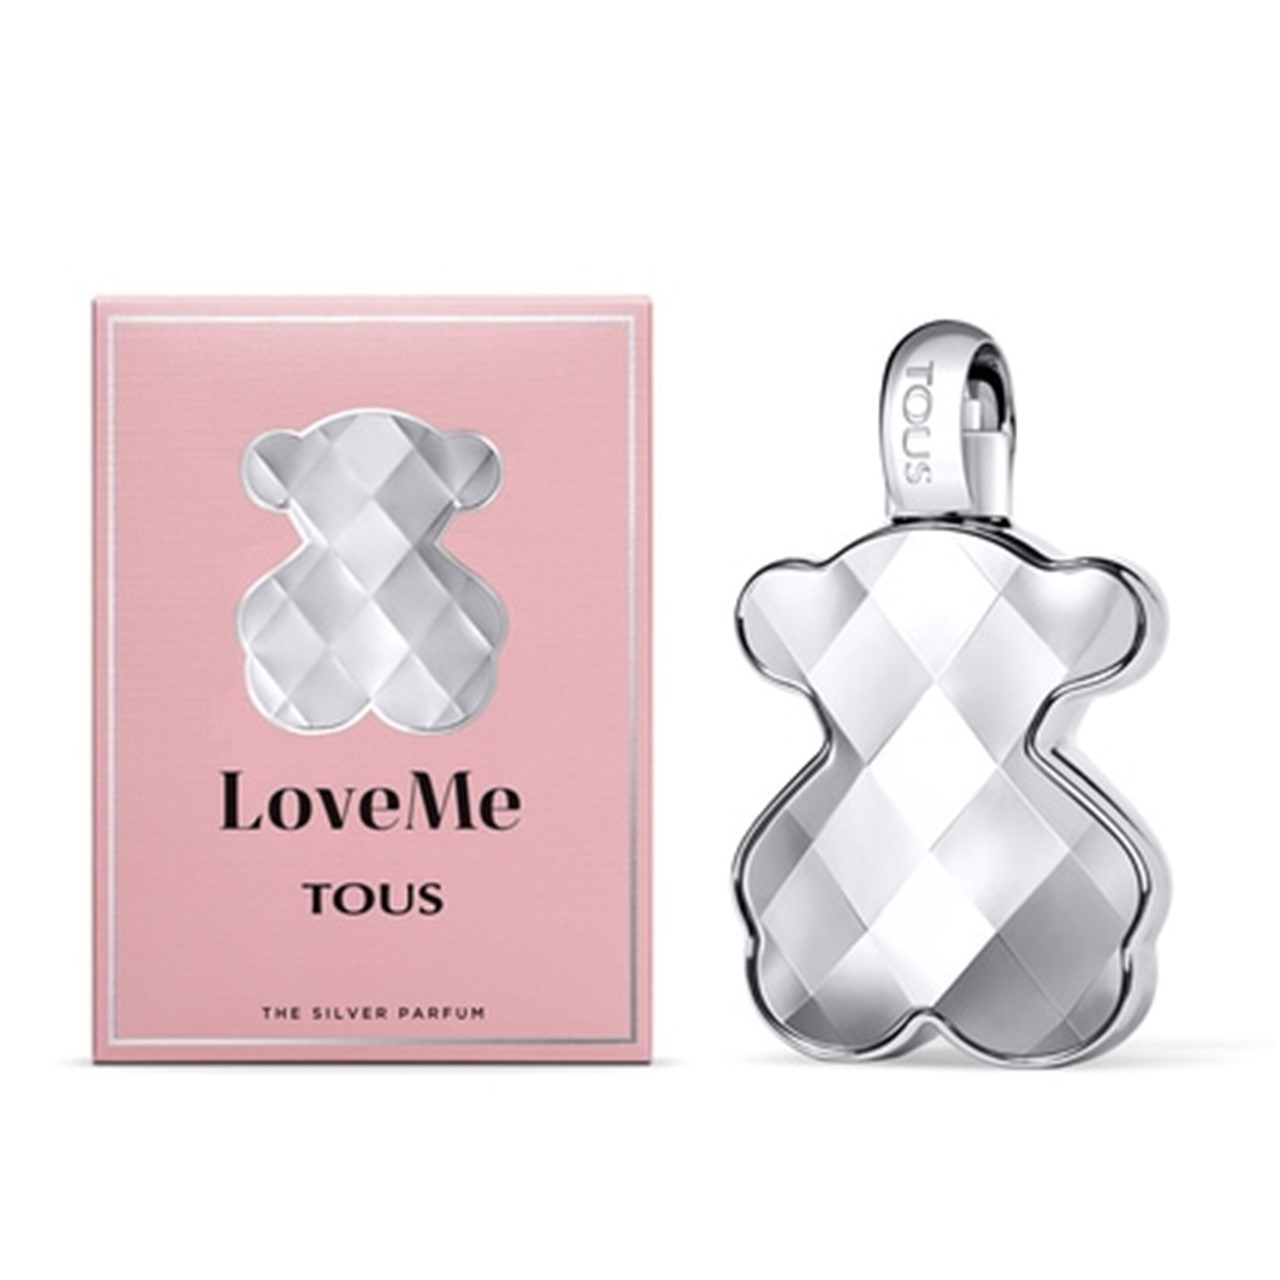 Tous LoveMe The Silver Parfum 90ml